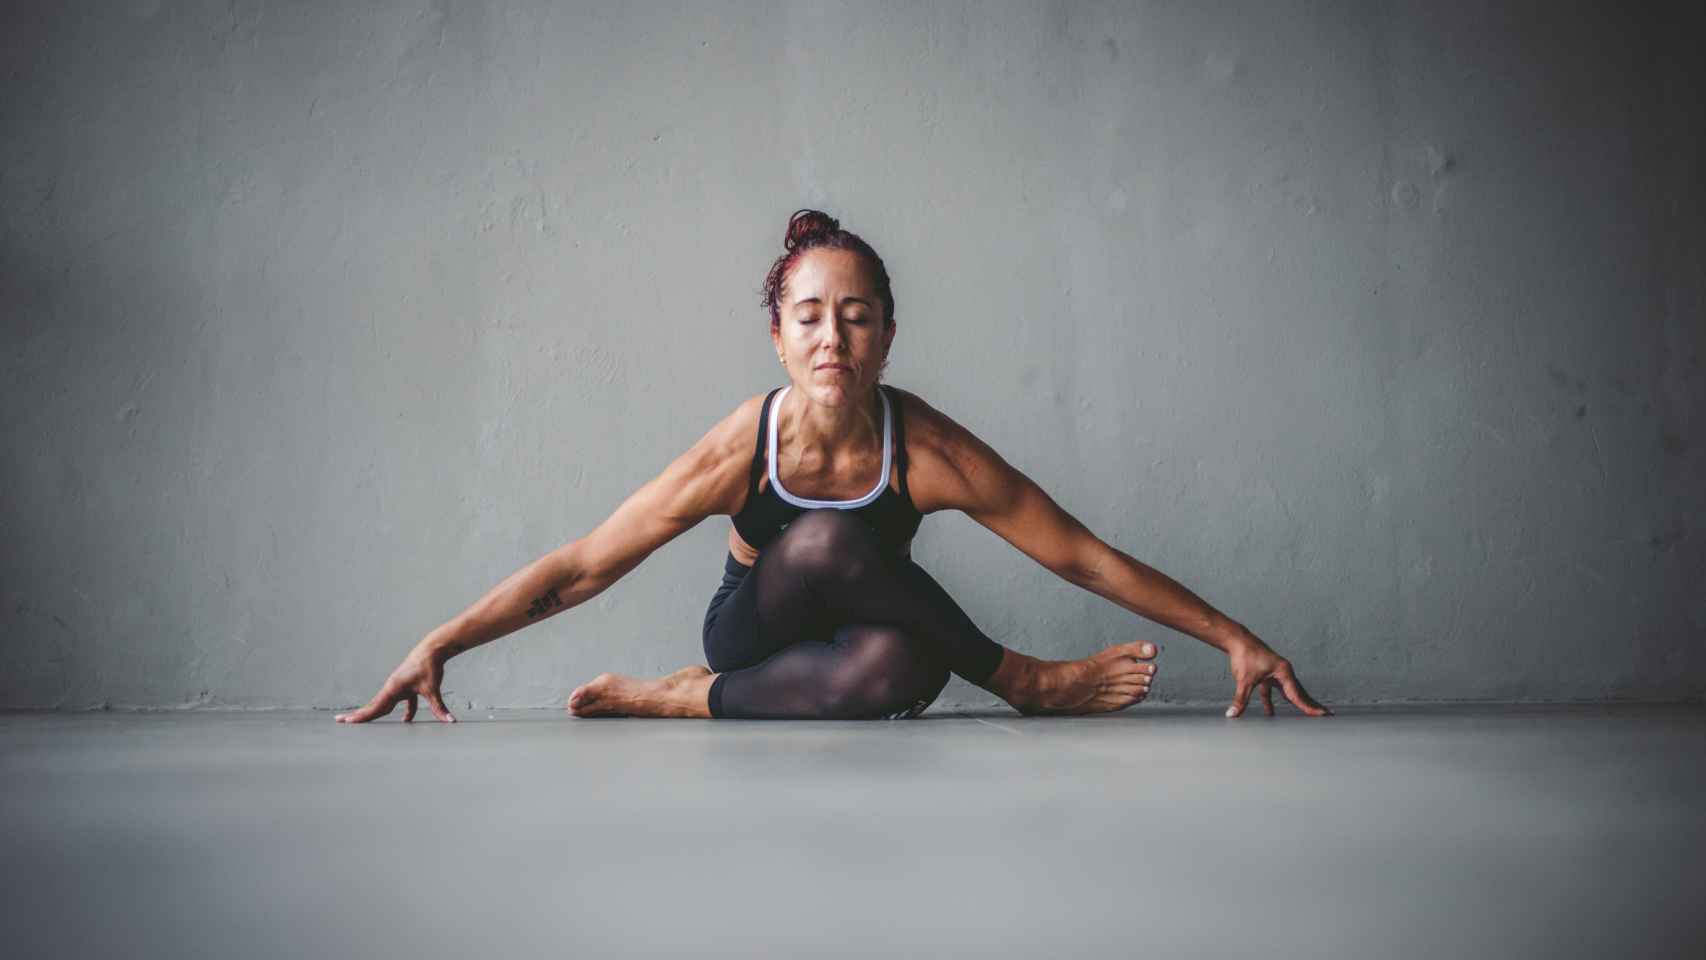 La conexión interior que aporta el yoga es un pilar del método.